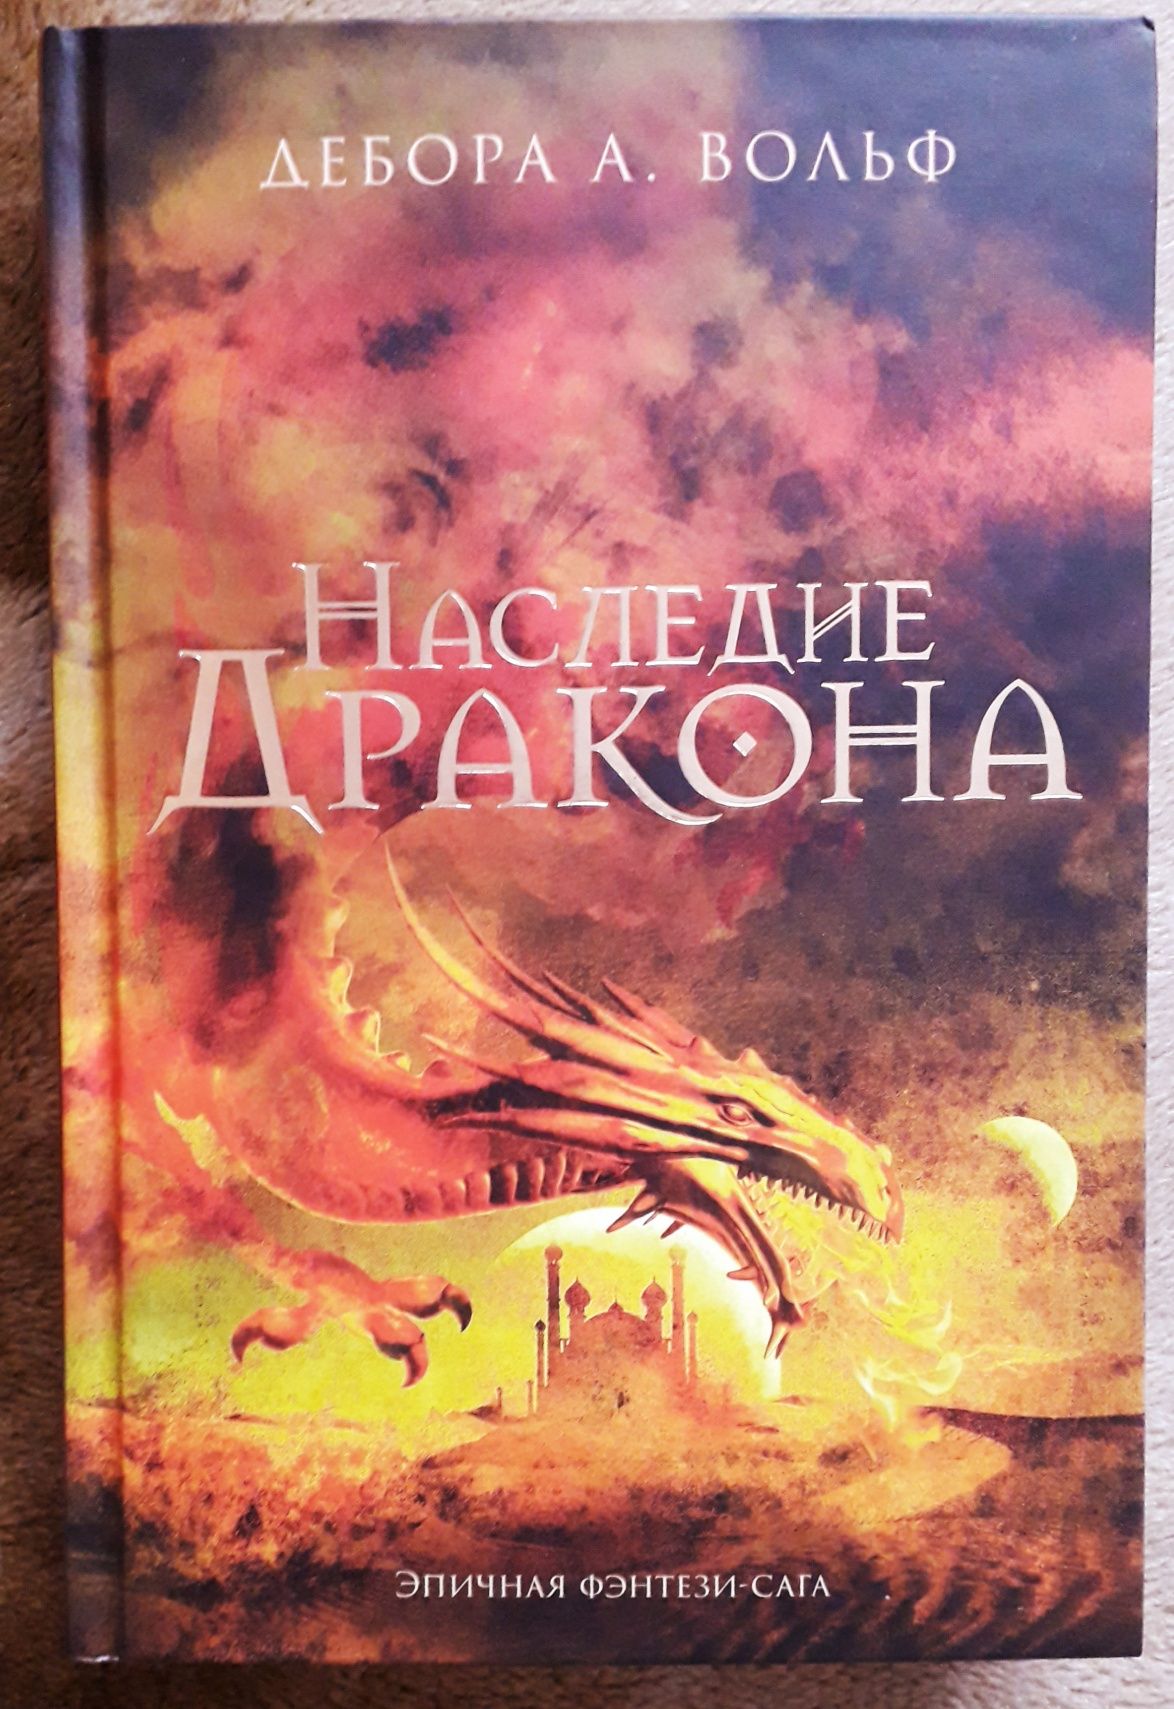 Книга Дебори А. Вольф "Наследие дракона"